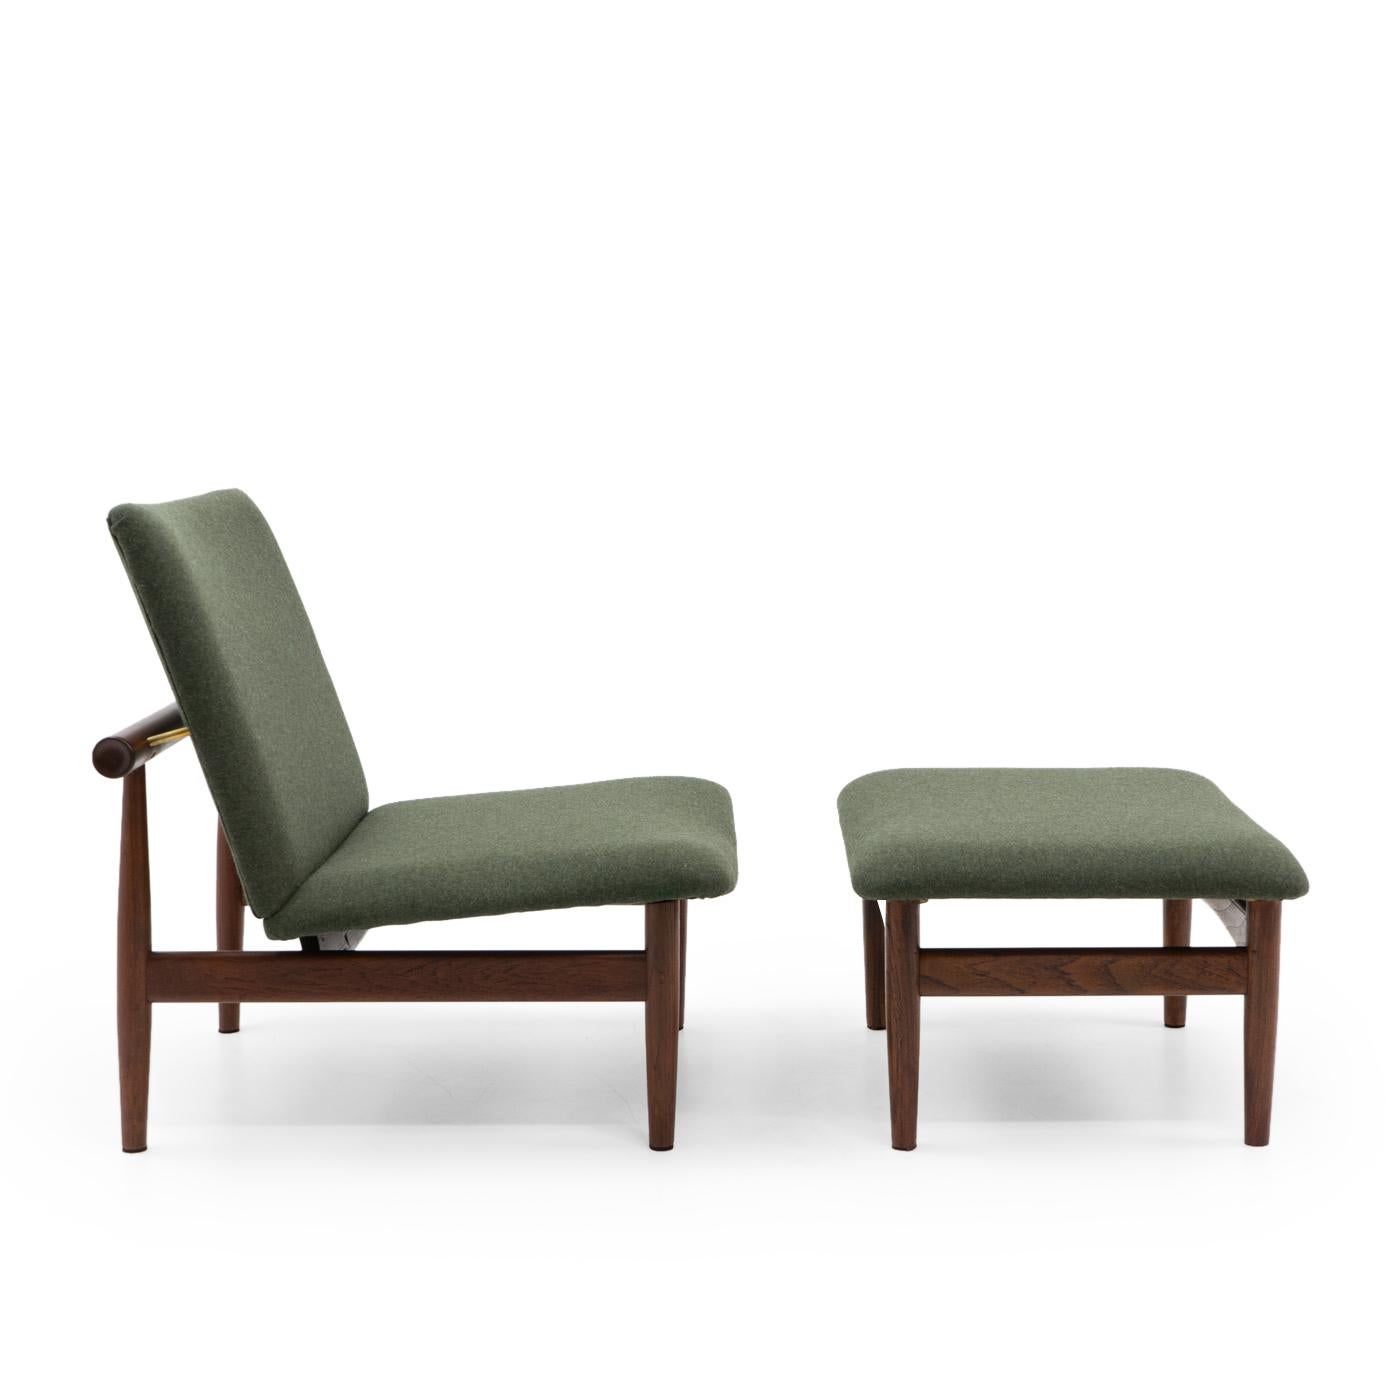 La série Japon de Finn Juhls est l'un de ses meubles les plus recherchés. Son design (1953) s'inspire de la porte d'eau de Miamjima, près d'Hiroshima.

Finn Juhls, architecte danois né en 1912, a créé son propre cabinet en 1945 où il s'est